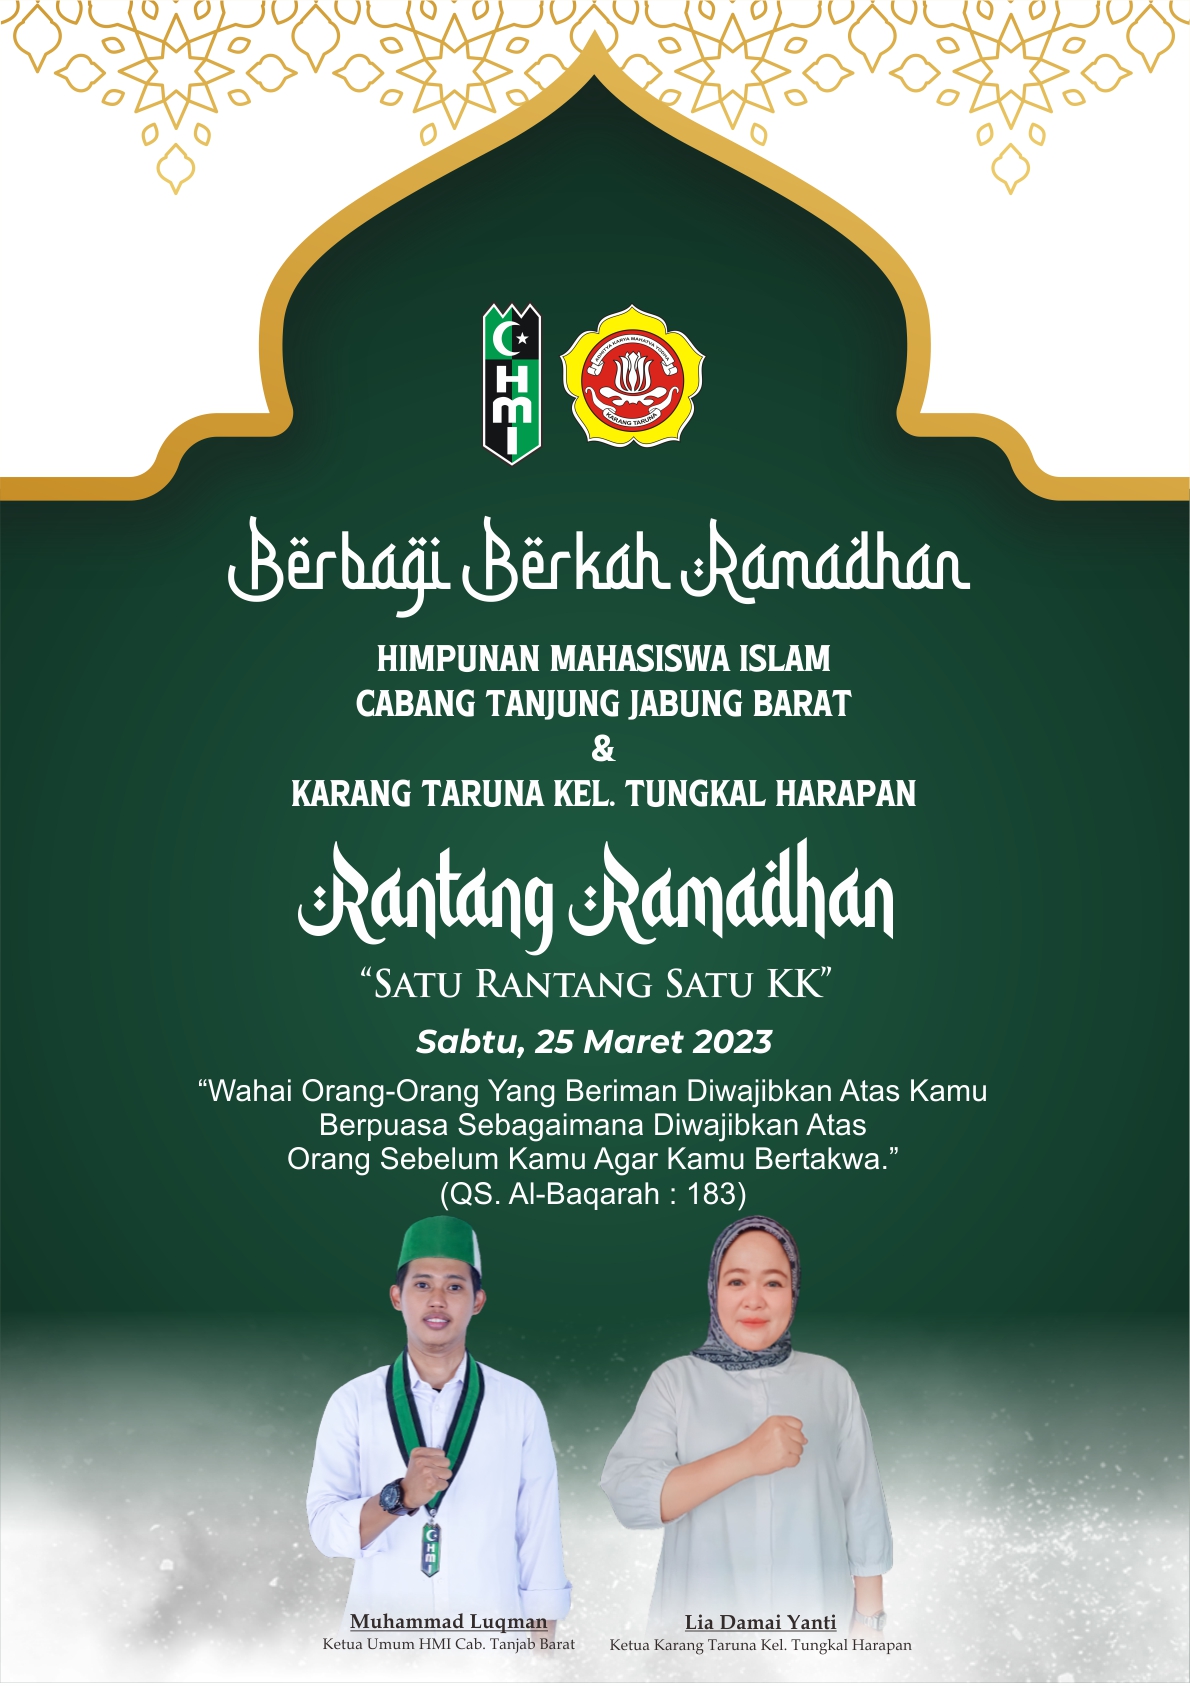 Karang Taruna Kelurahan Tungkal Harapan bersama Himpunan Mahasiswa Islam (HMI) Cabang Tanjung Jabung Barat  berbagai berkah Ramadhan